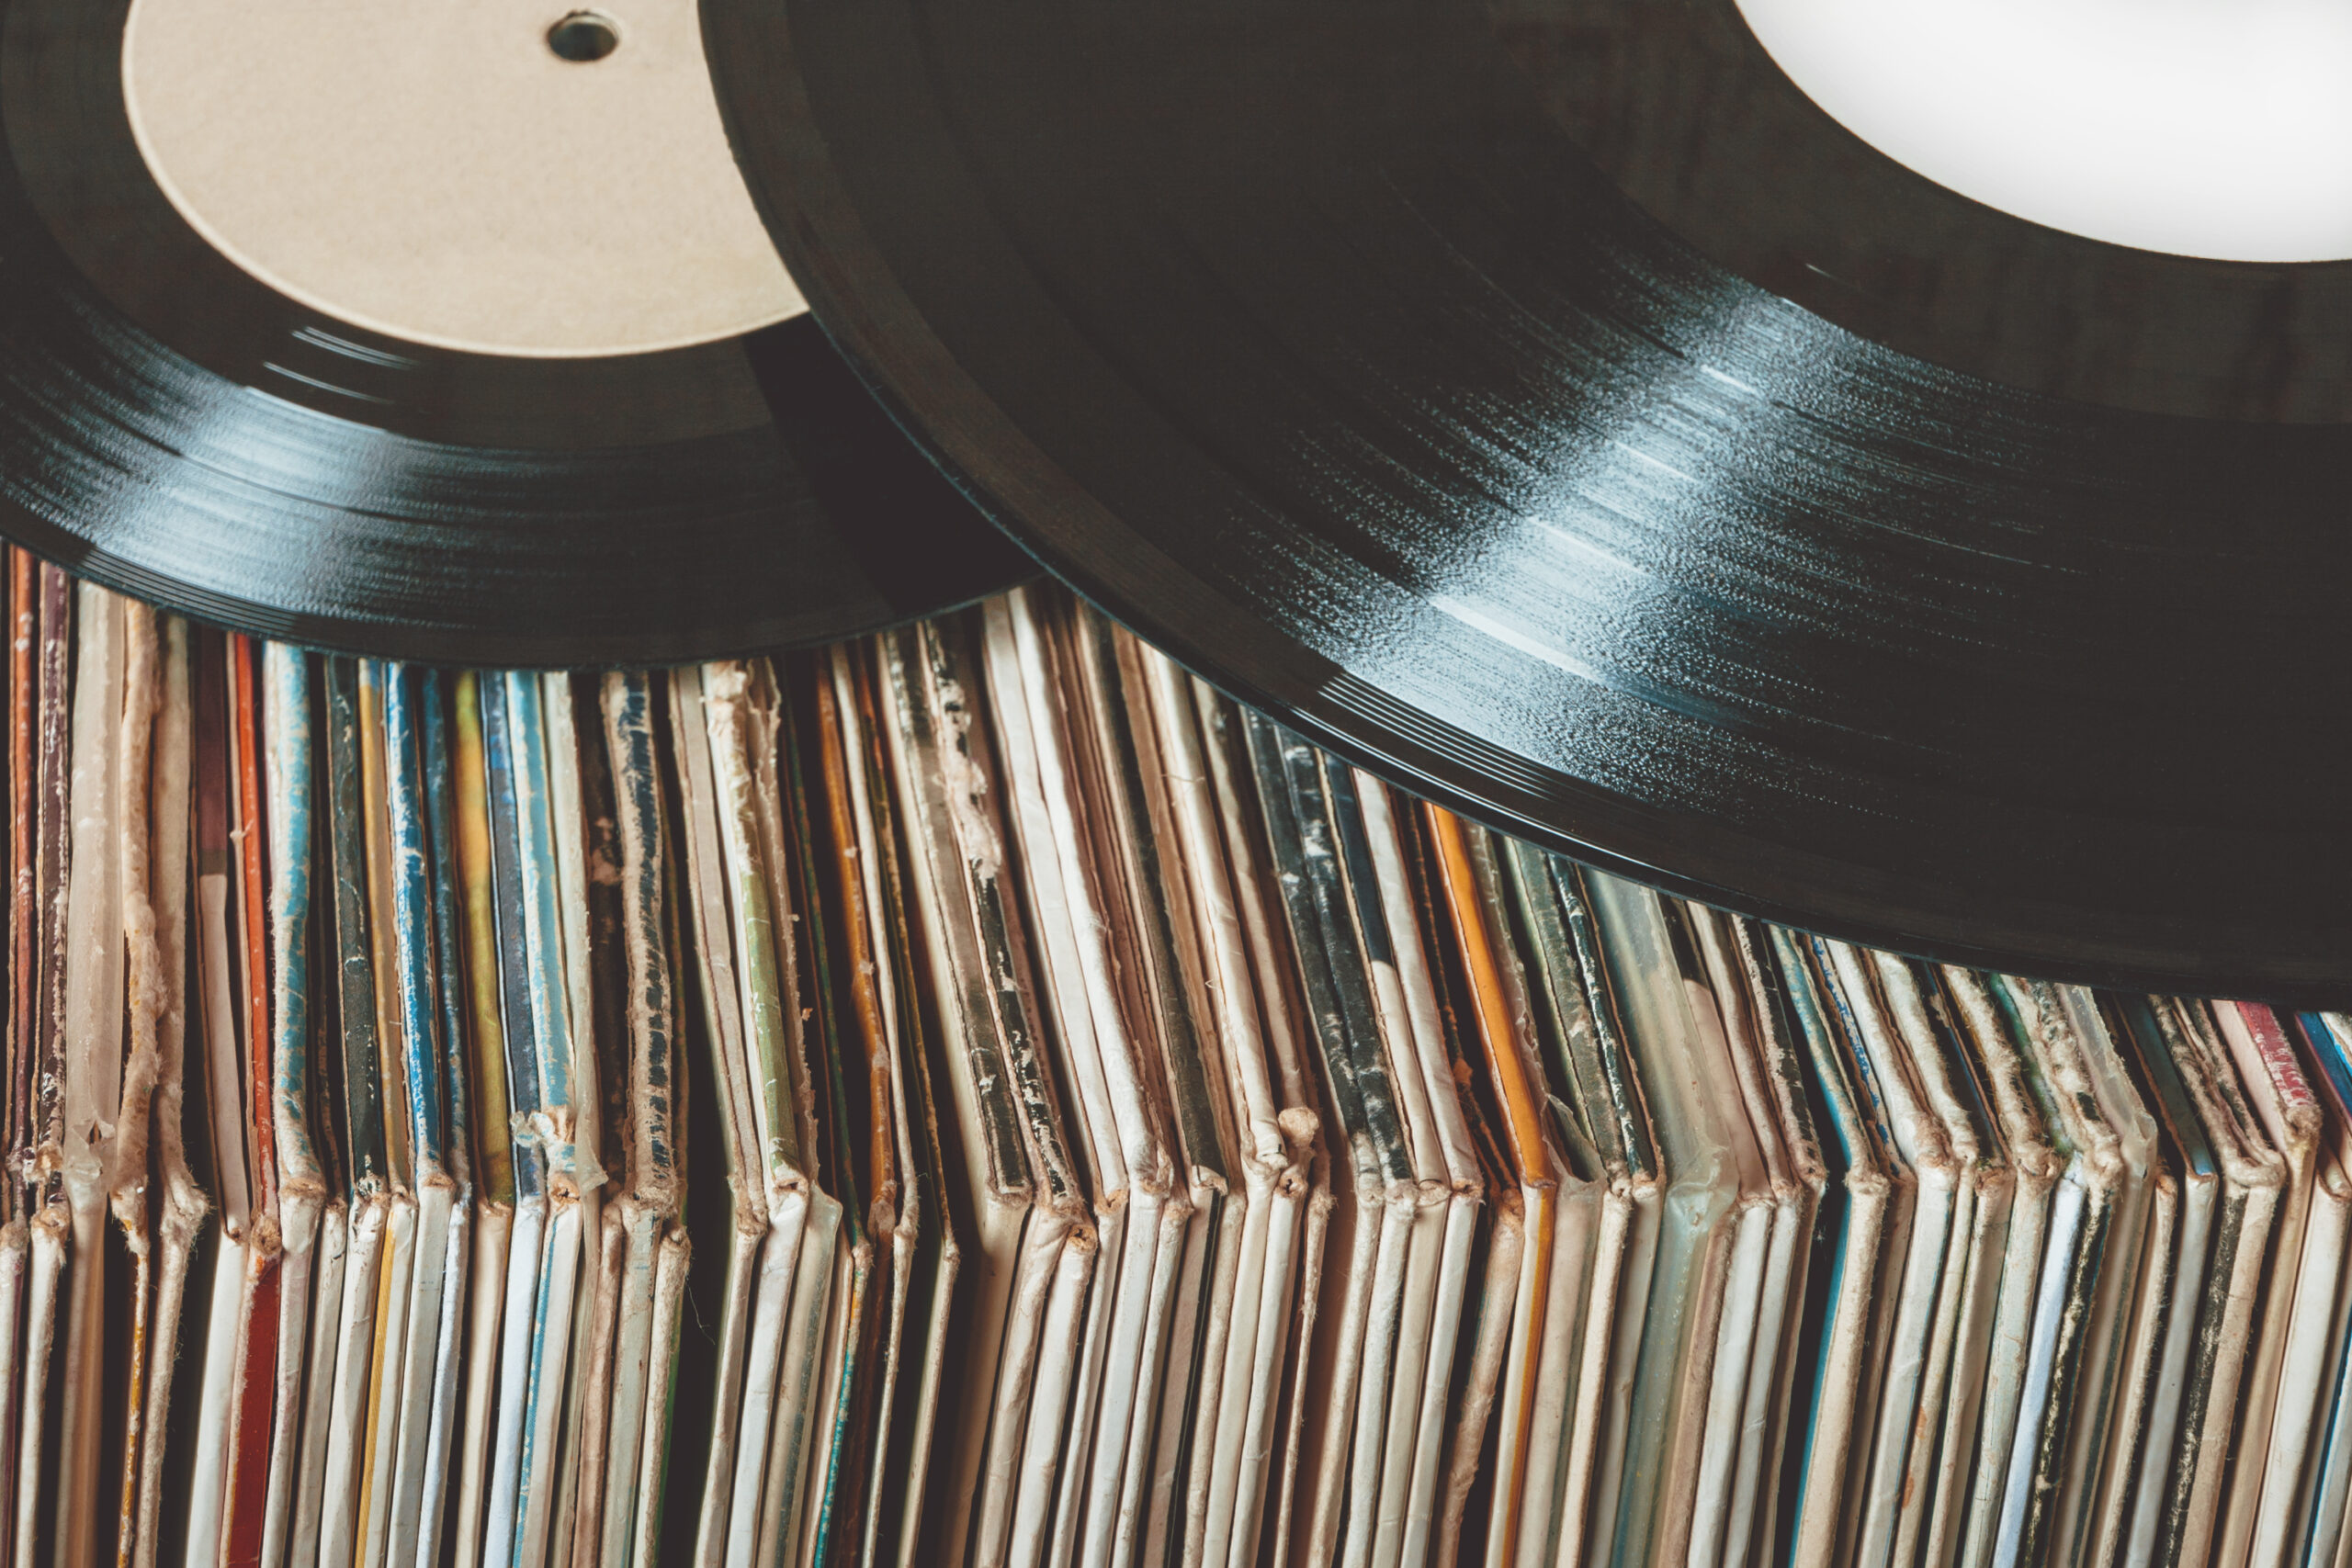 Creciente demanda de discos vinilo abruma a fabricantes - Los